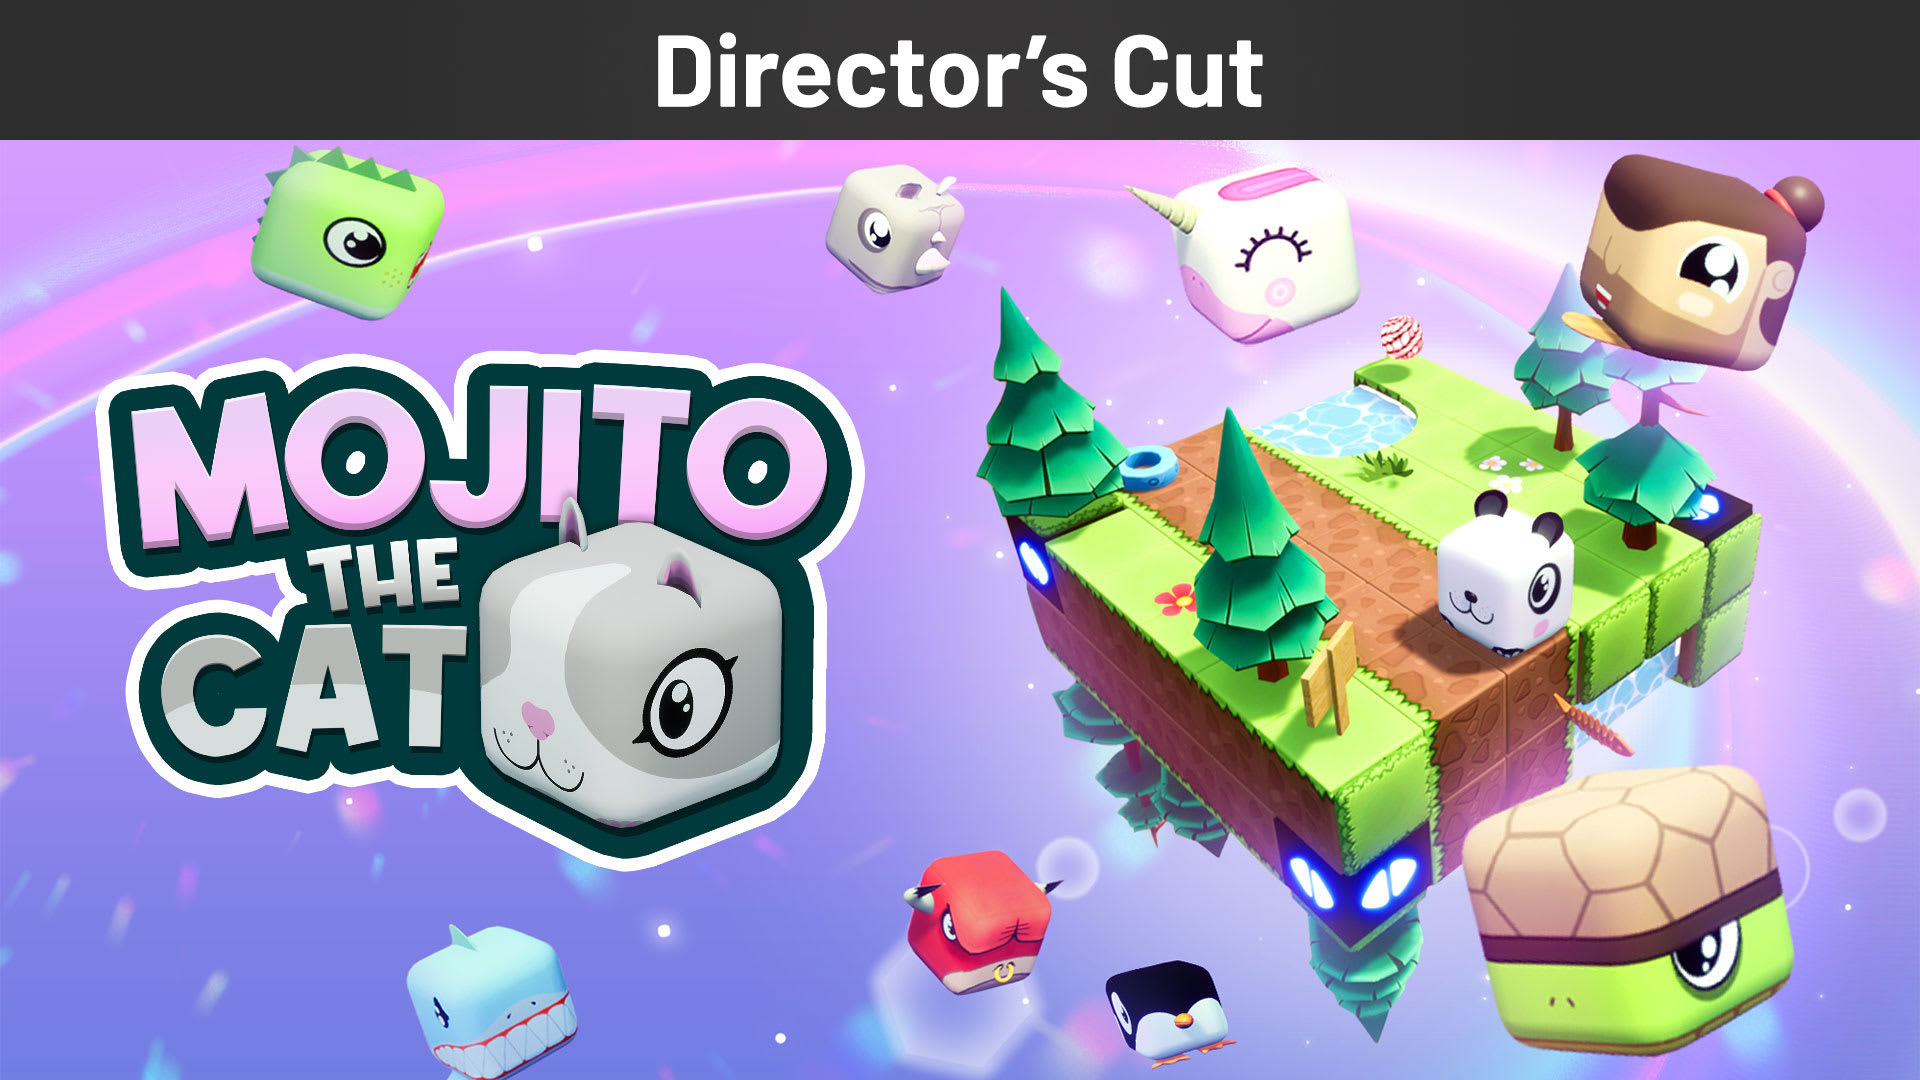 Mojito the Cat Director's Cut 1